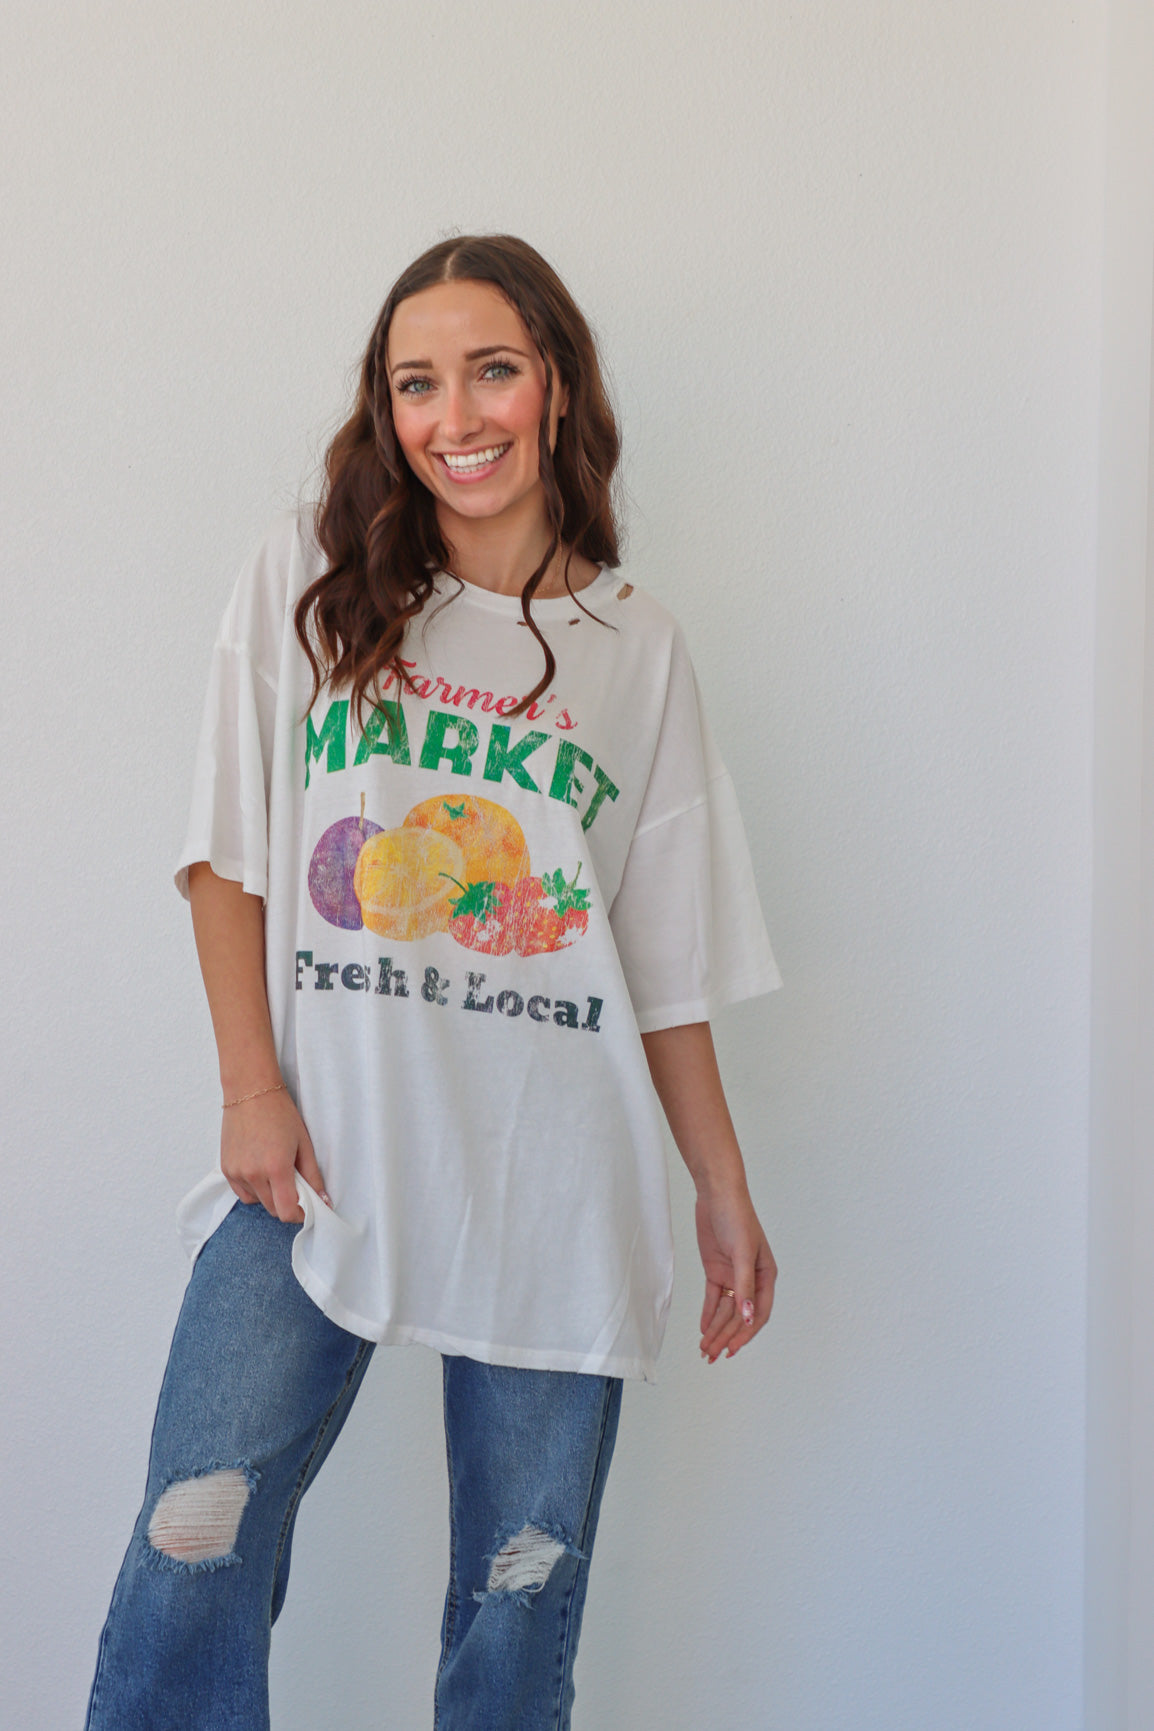 girl wearing white farmer's market t-shirt